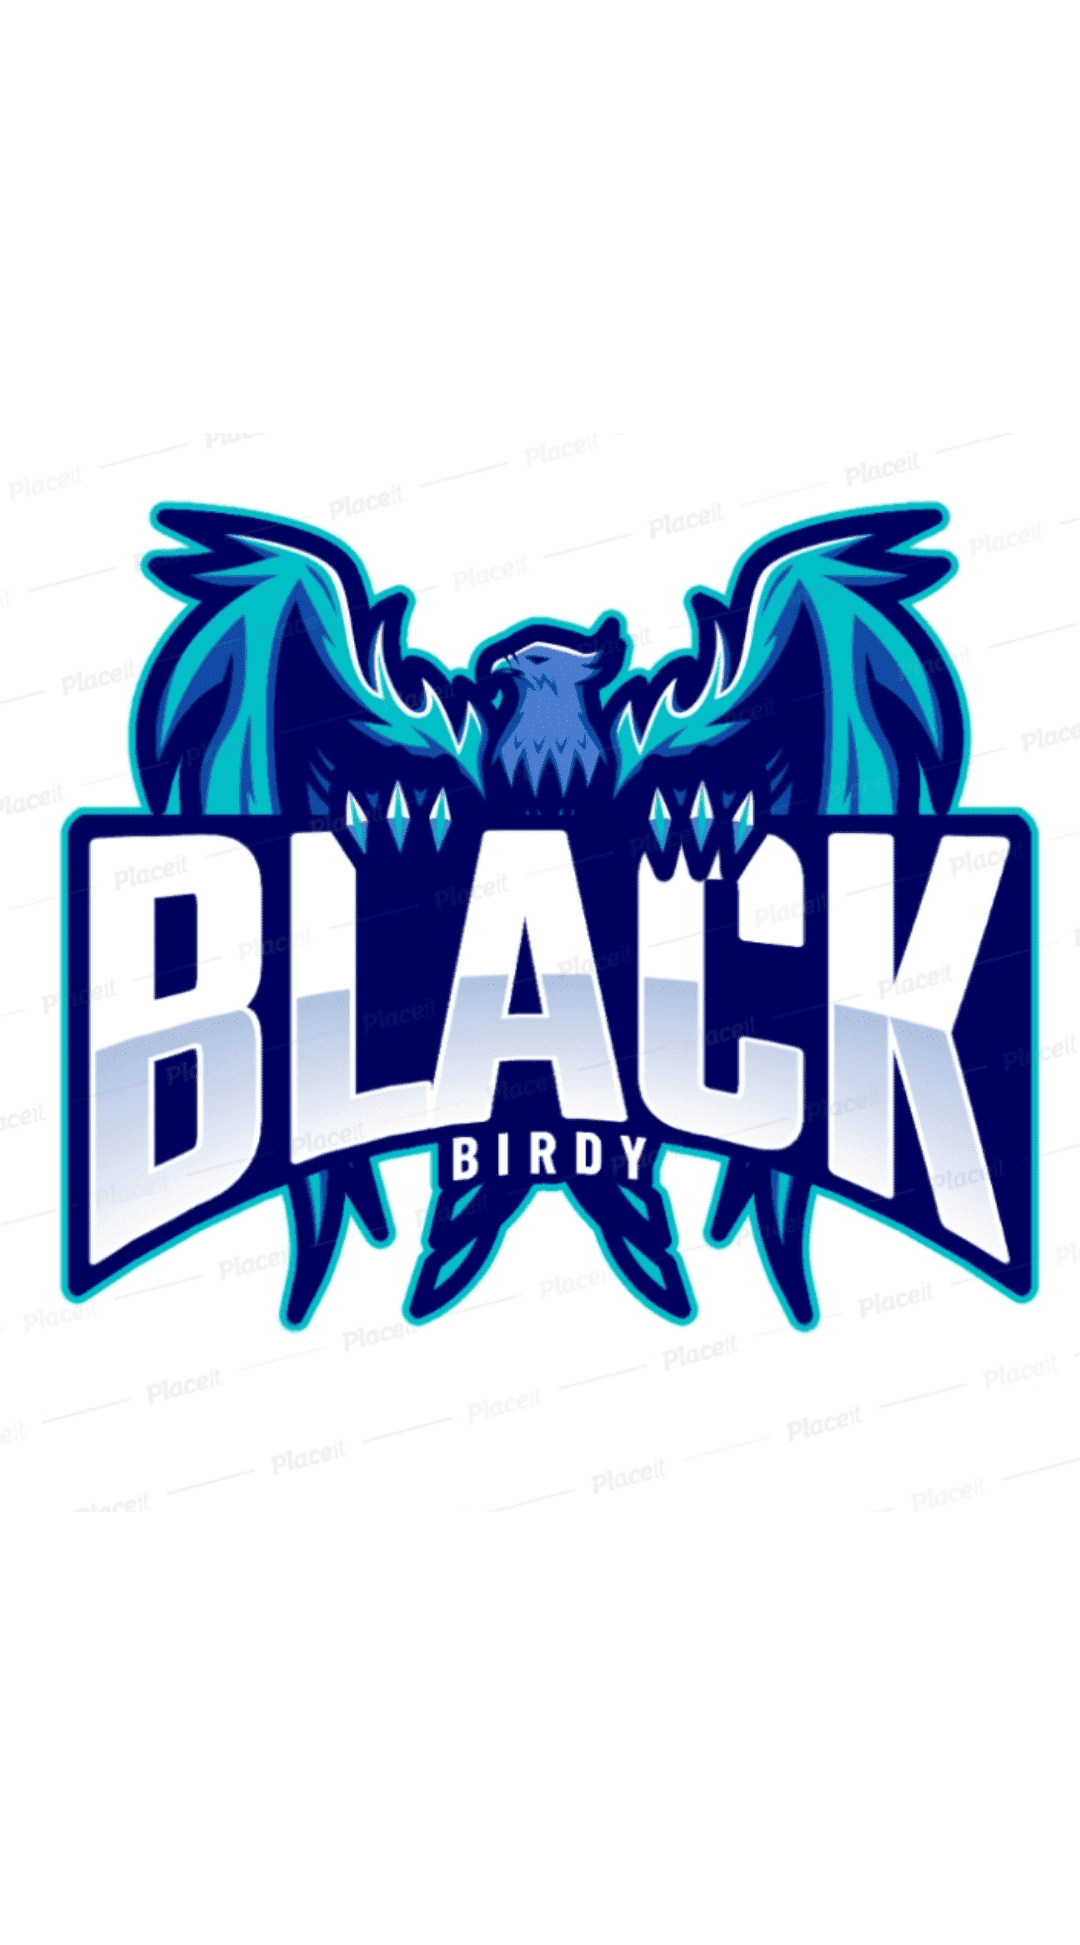 Black Birdy